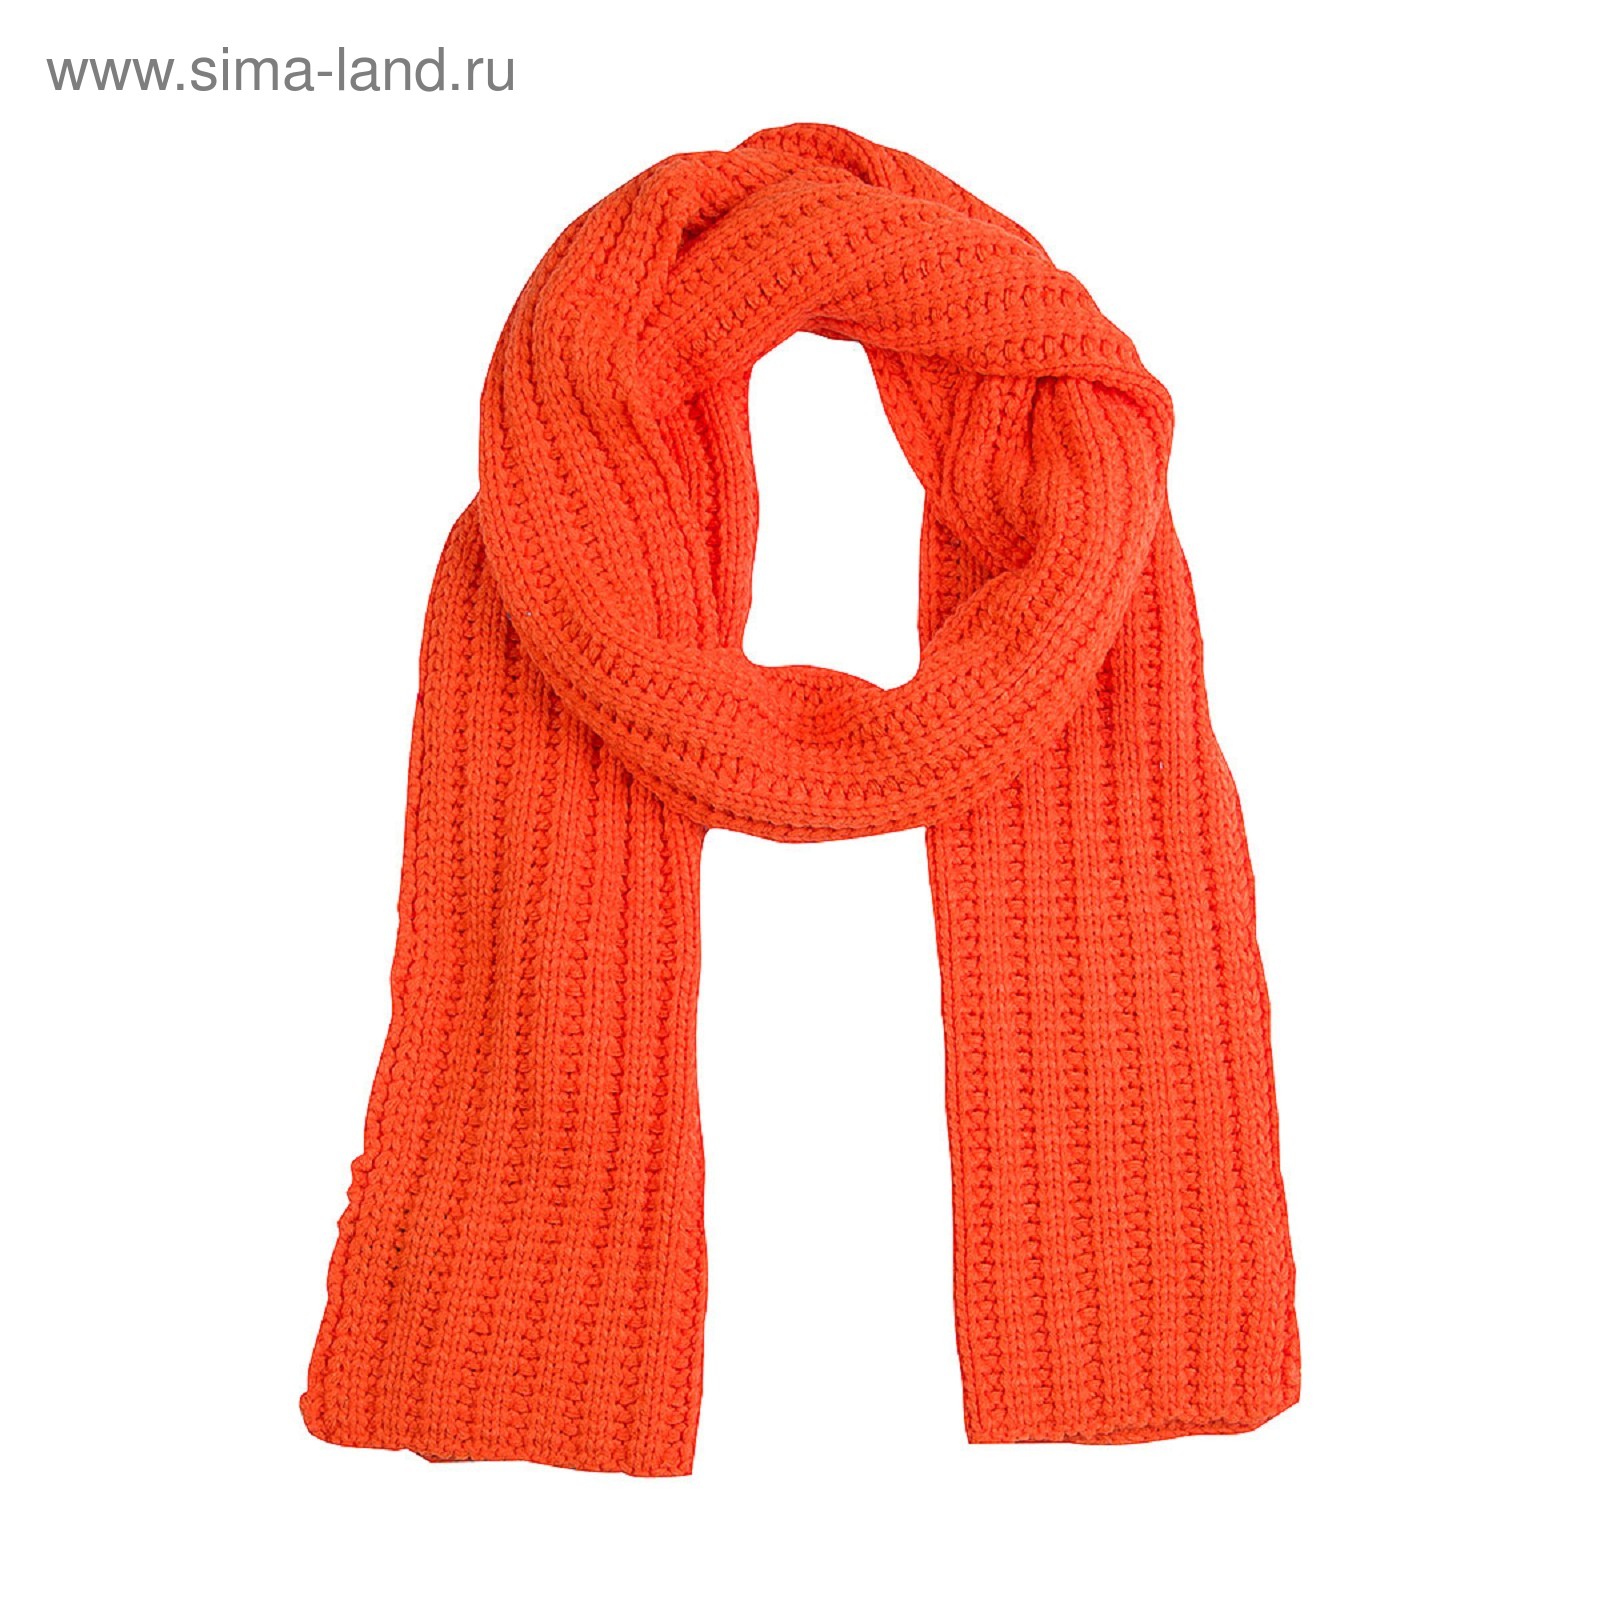 Шарфы заказать. Шарф. Вязаные шарфы. Трикотажный шарф. Оранжевый вязаный шарф.